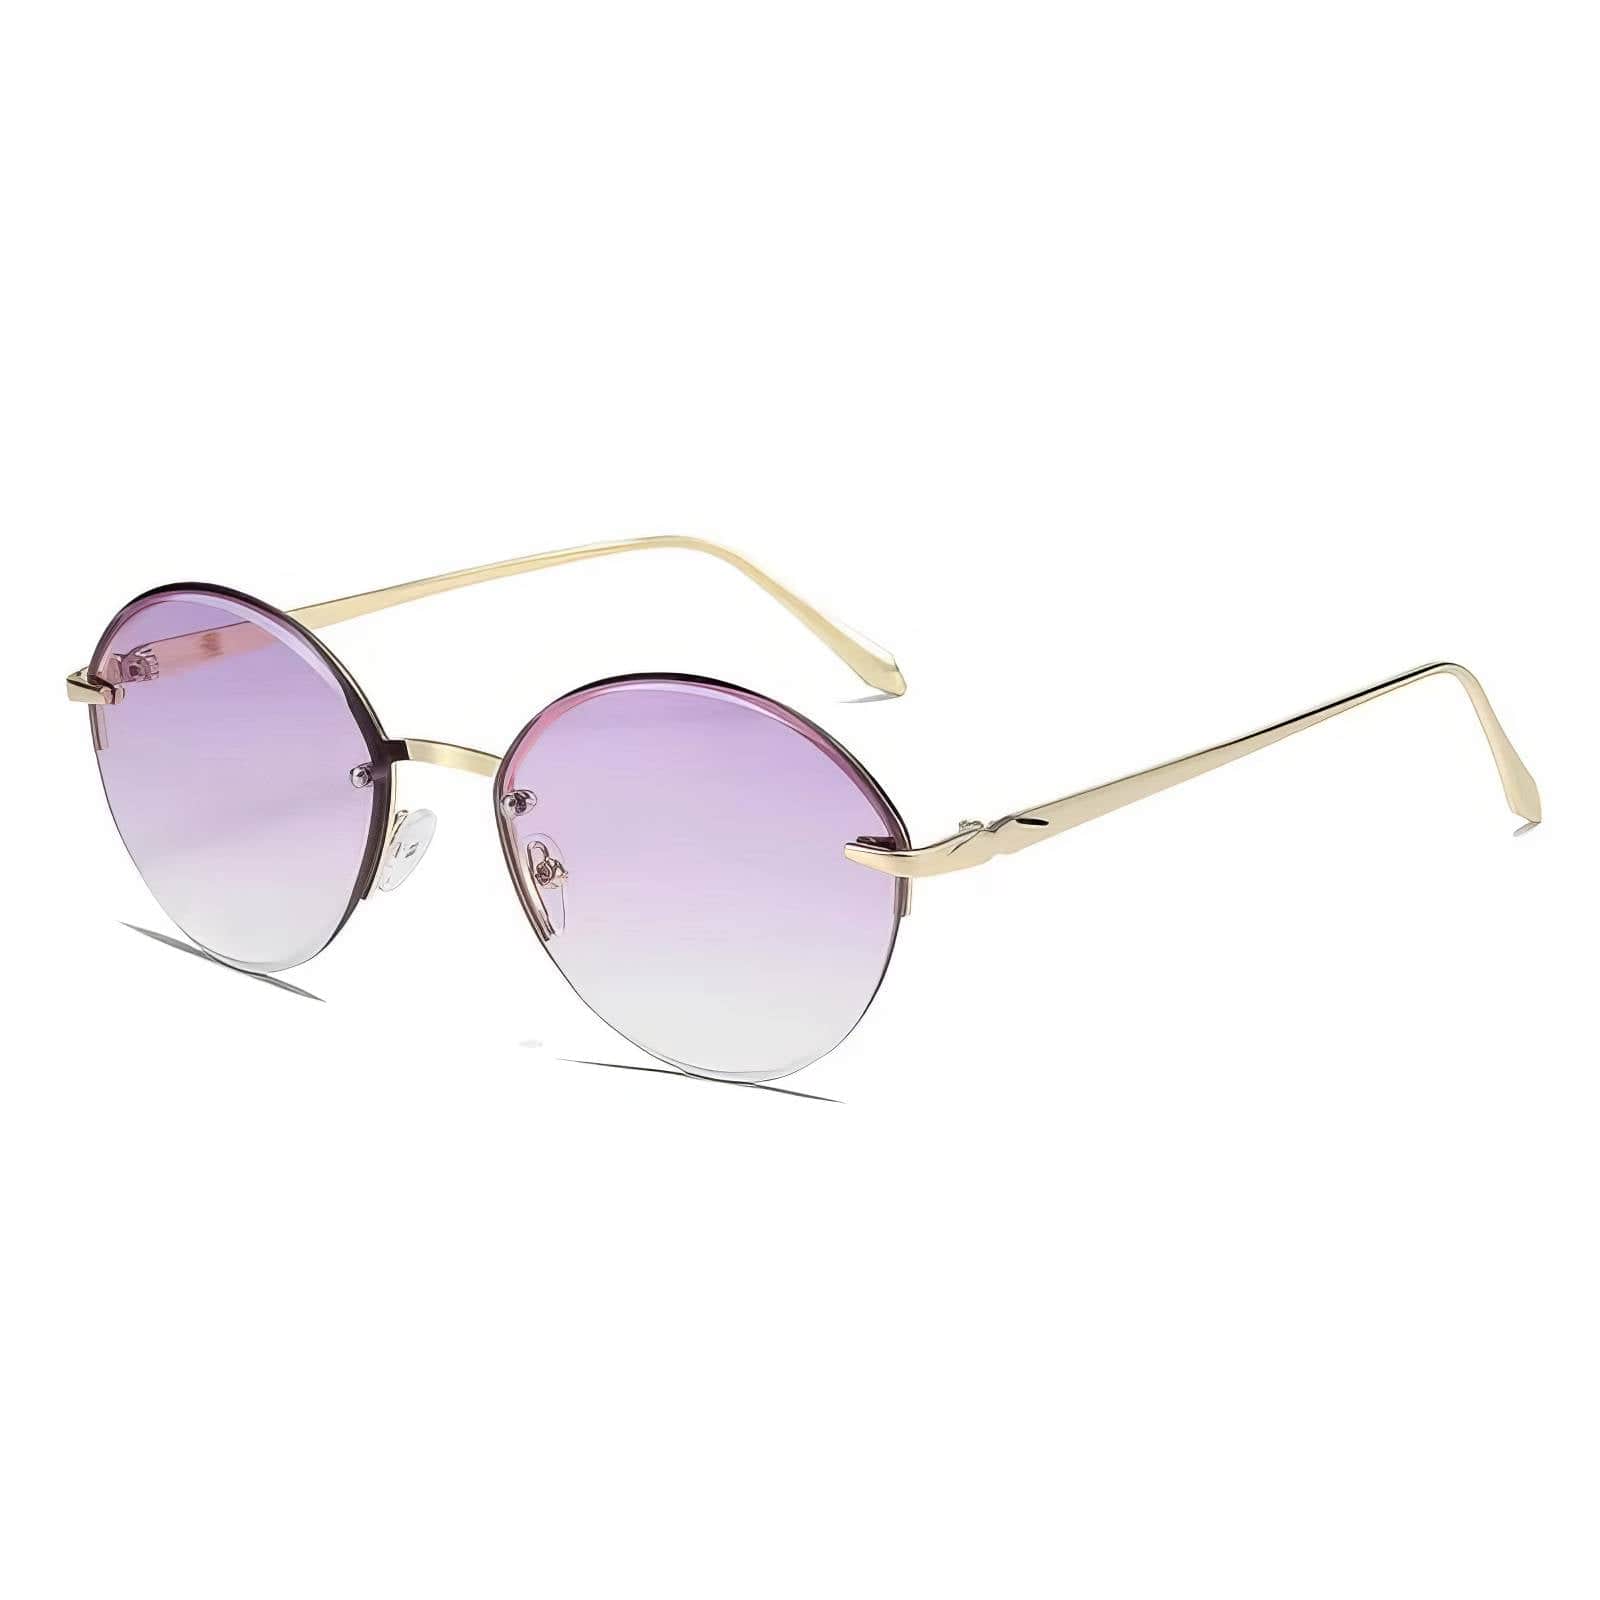 Half Metal Frame Oval Sunglasses Light Purple / Resin